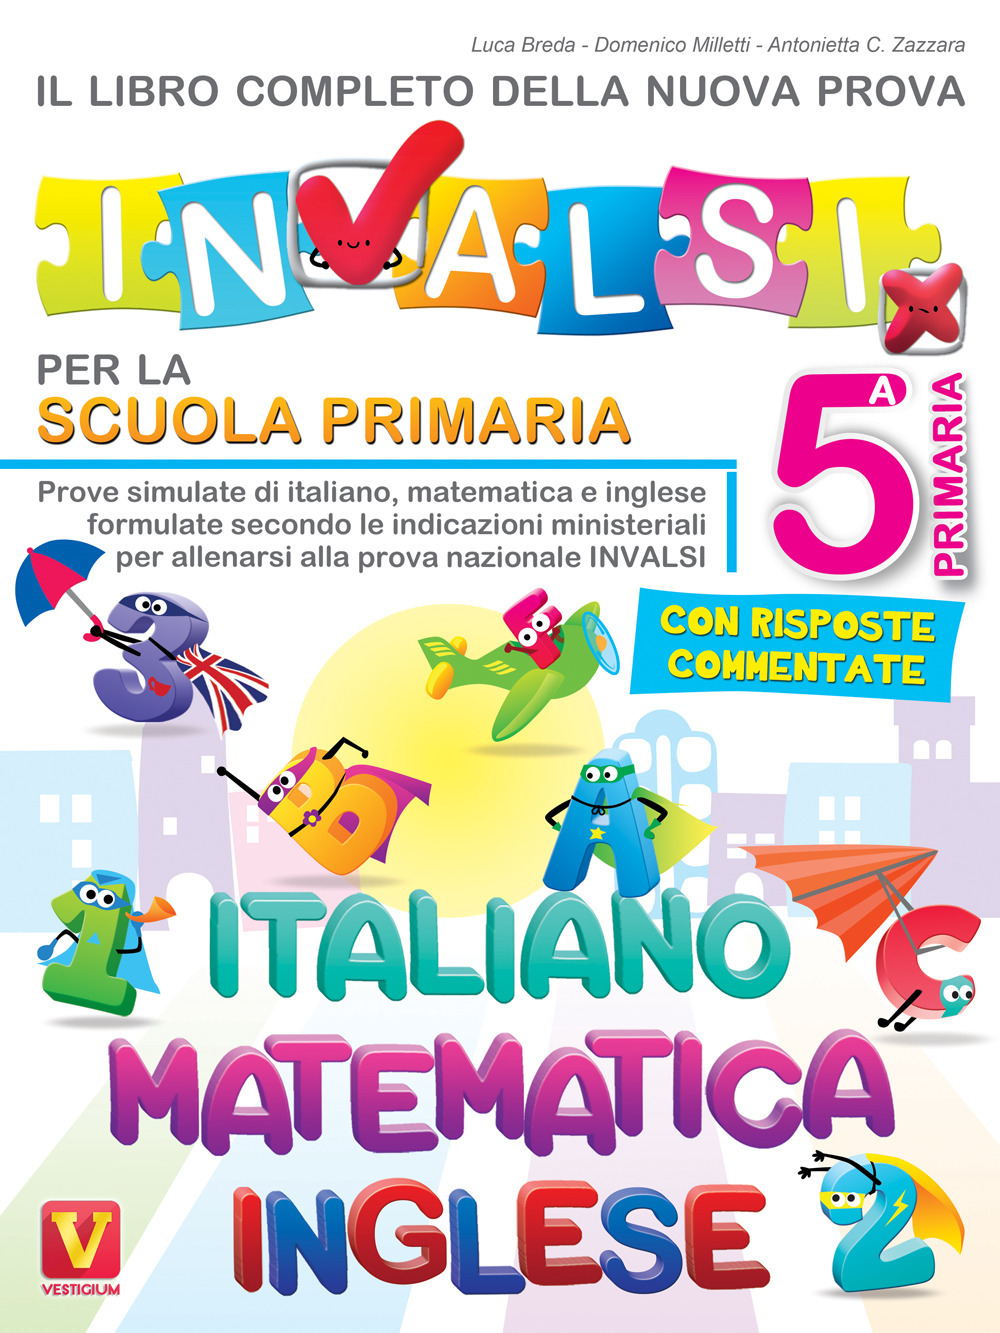 Il libro completo della nuova prova INVALSI per la scuola elementare. 5ª elementare. Italiano, matematica e inglese